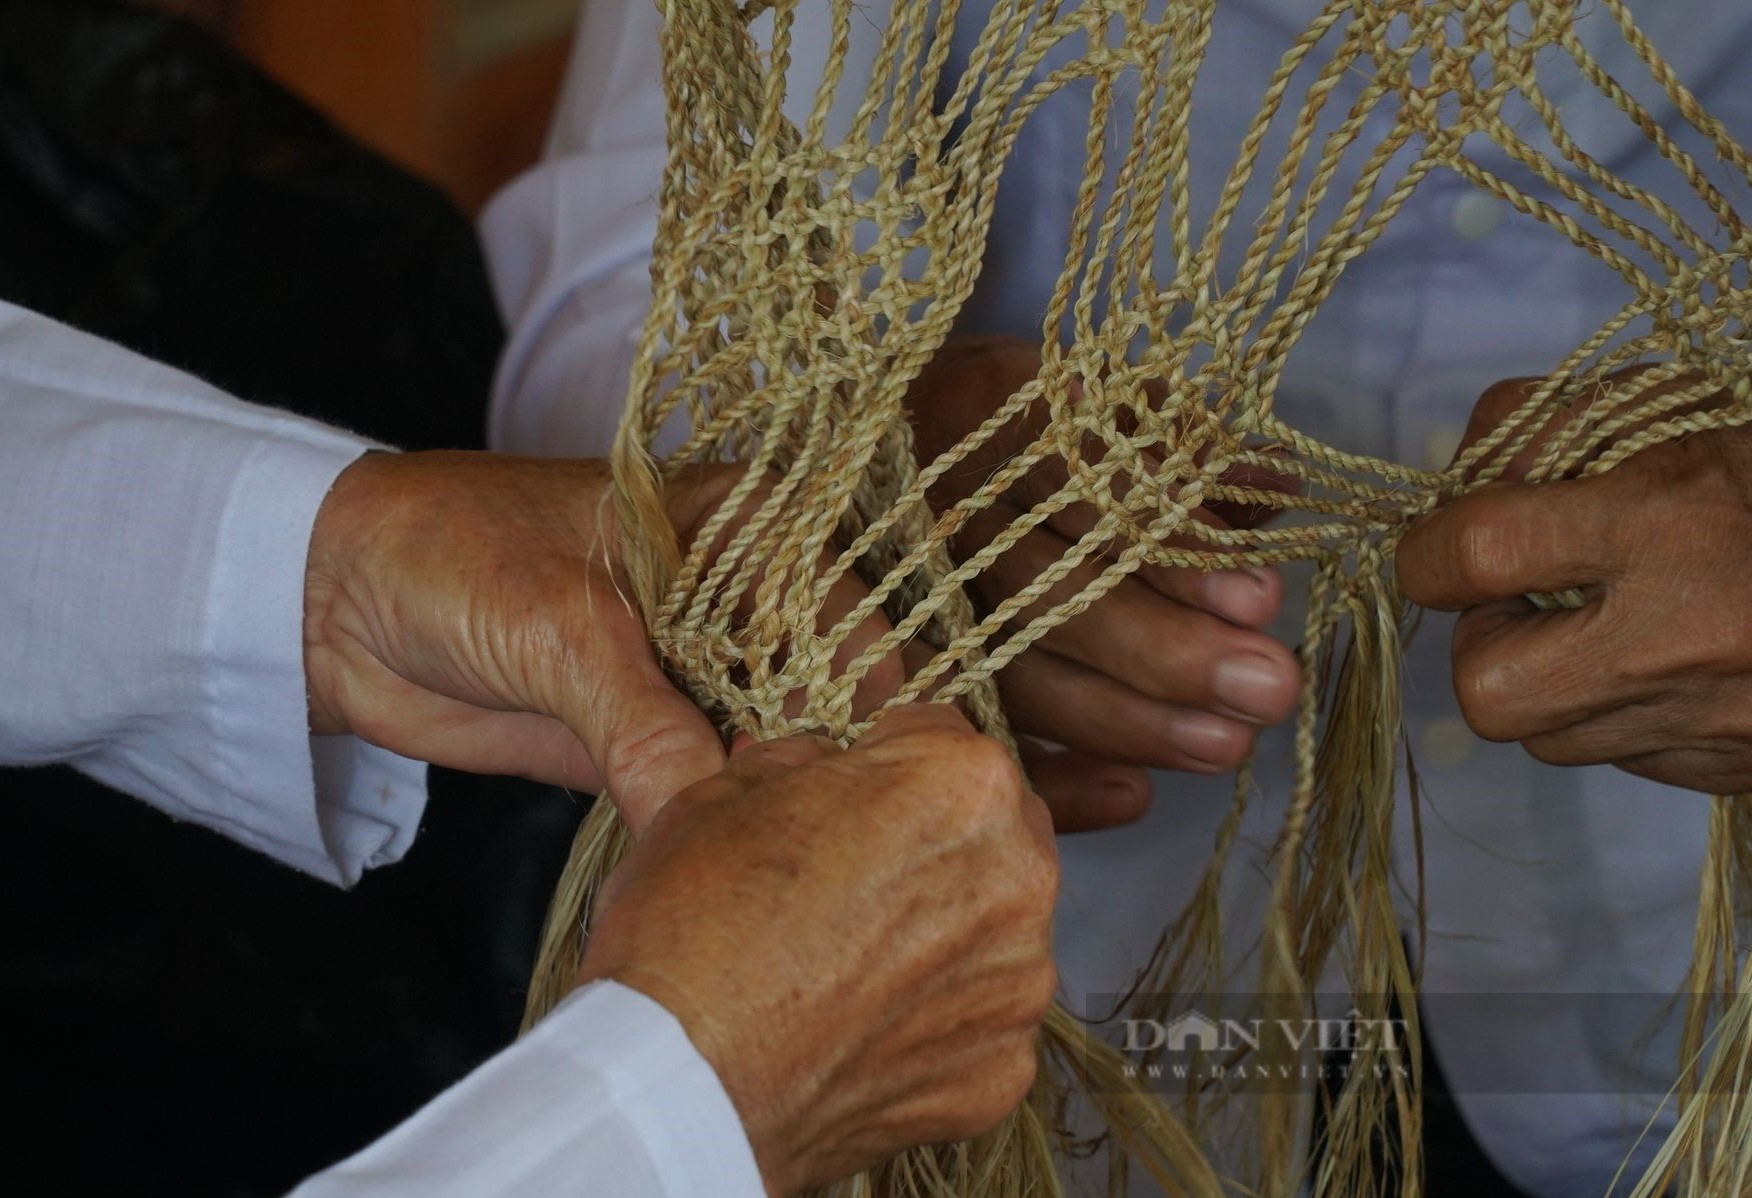 Xã này ở Nghệ An bà con người Thổ tuốt cây gai lấy sợi đan loại võng đặc biệt dùng hàng chục năm không hỏng - Ảnh 5.